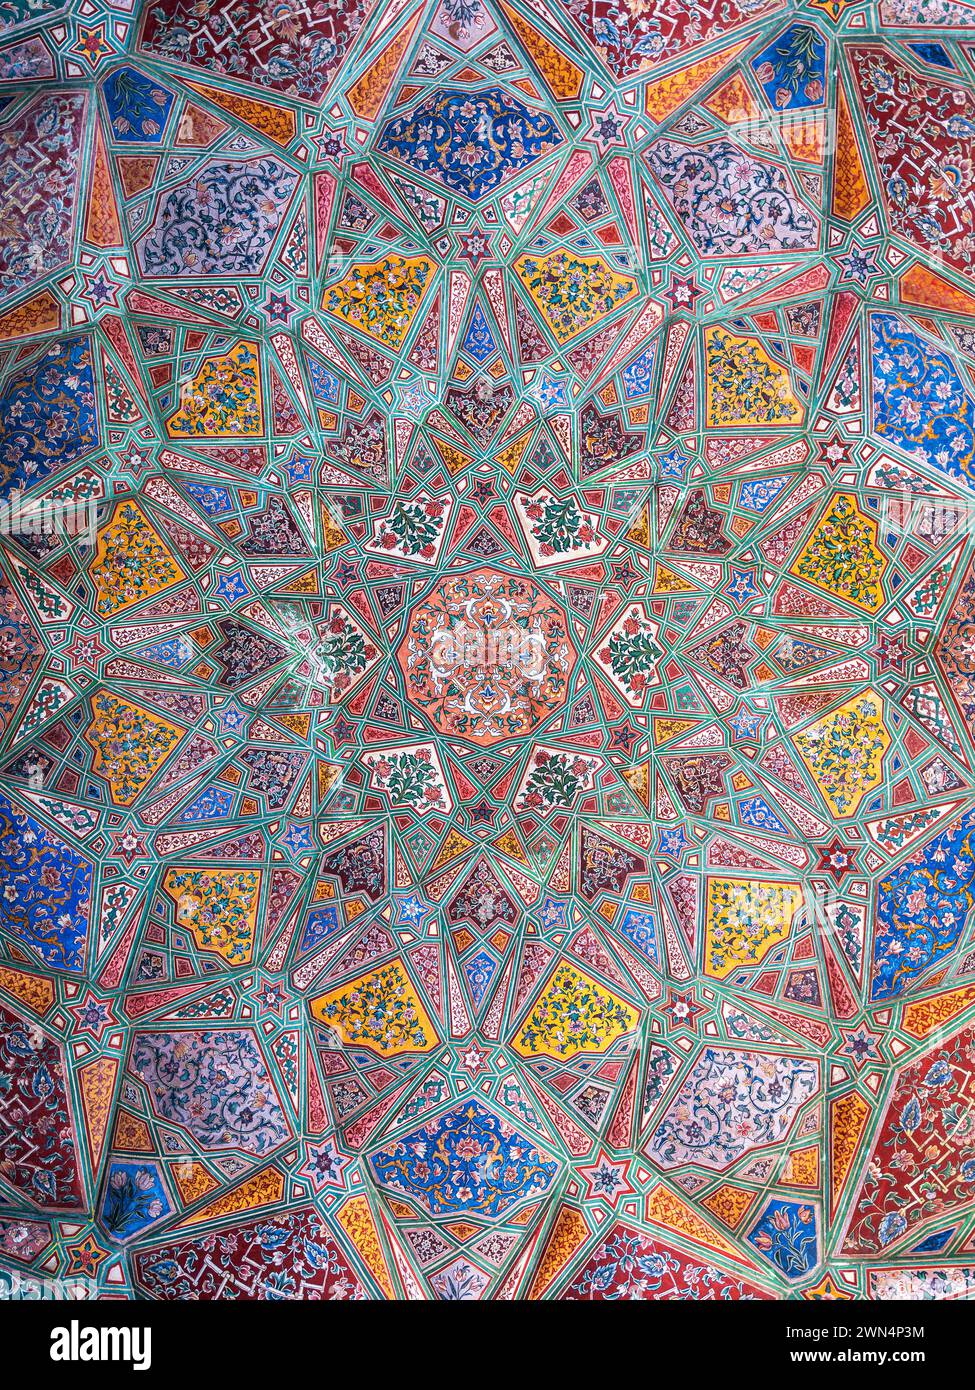 Techo histórico artístico con coloridas decoraciones en Masjid Wazir Khan, una mezquita mogol del siglo XVII ubicada en la ciudad de Lahore, Pakistán. Foto de stock